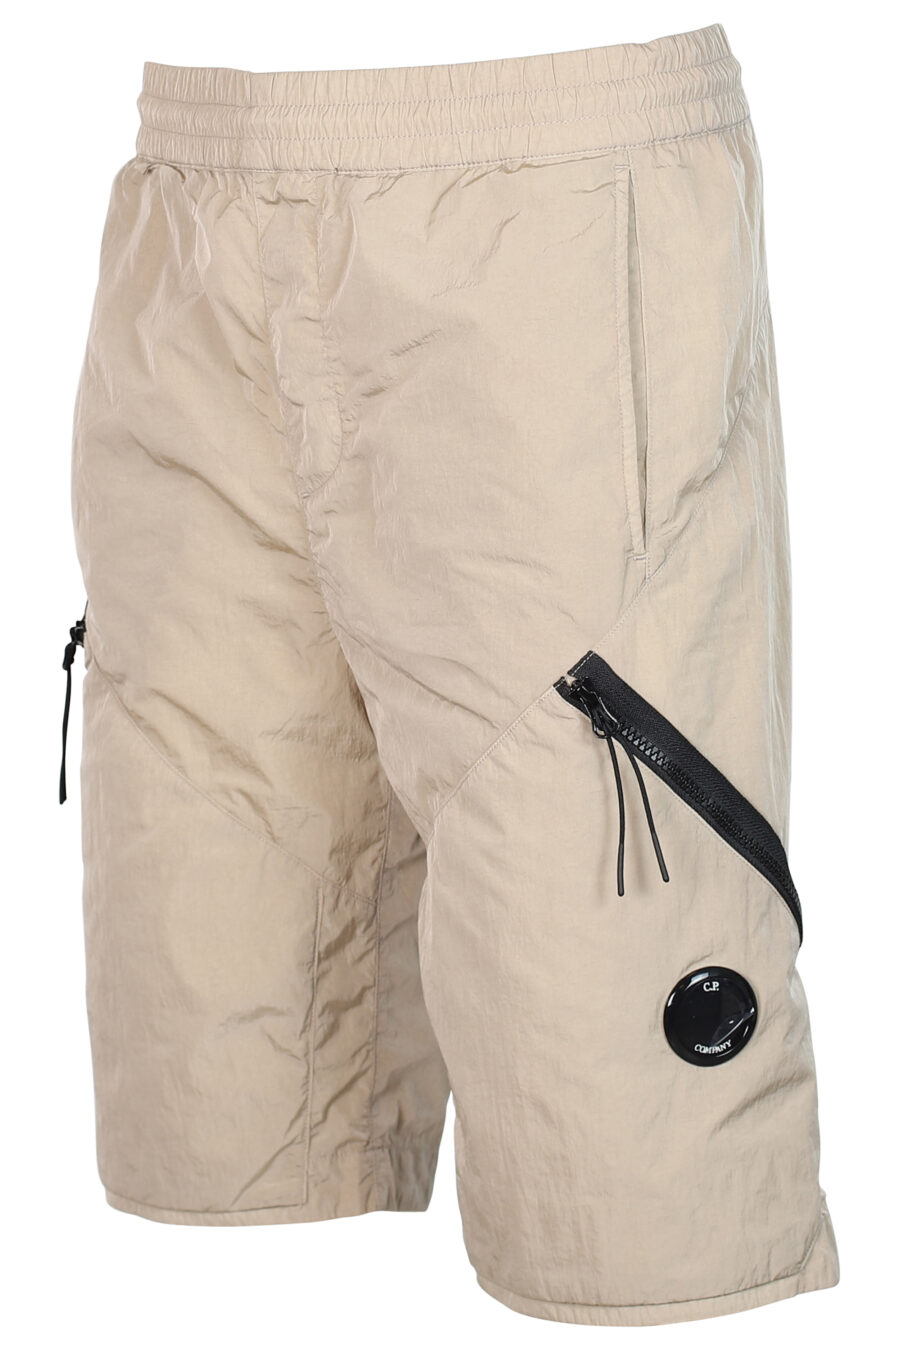 Pantalón corto beige con cremallera diagonal y logo lente - 7620943518221 2